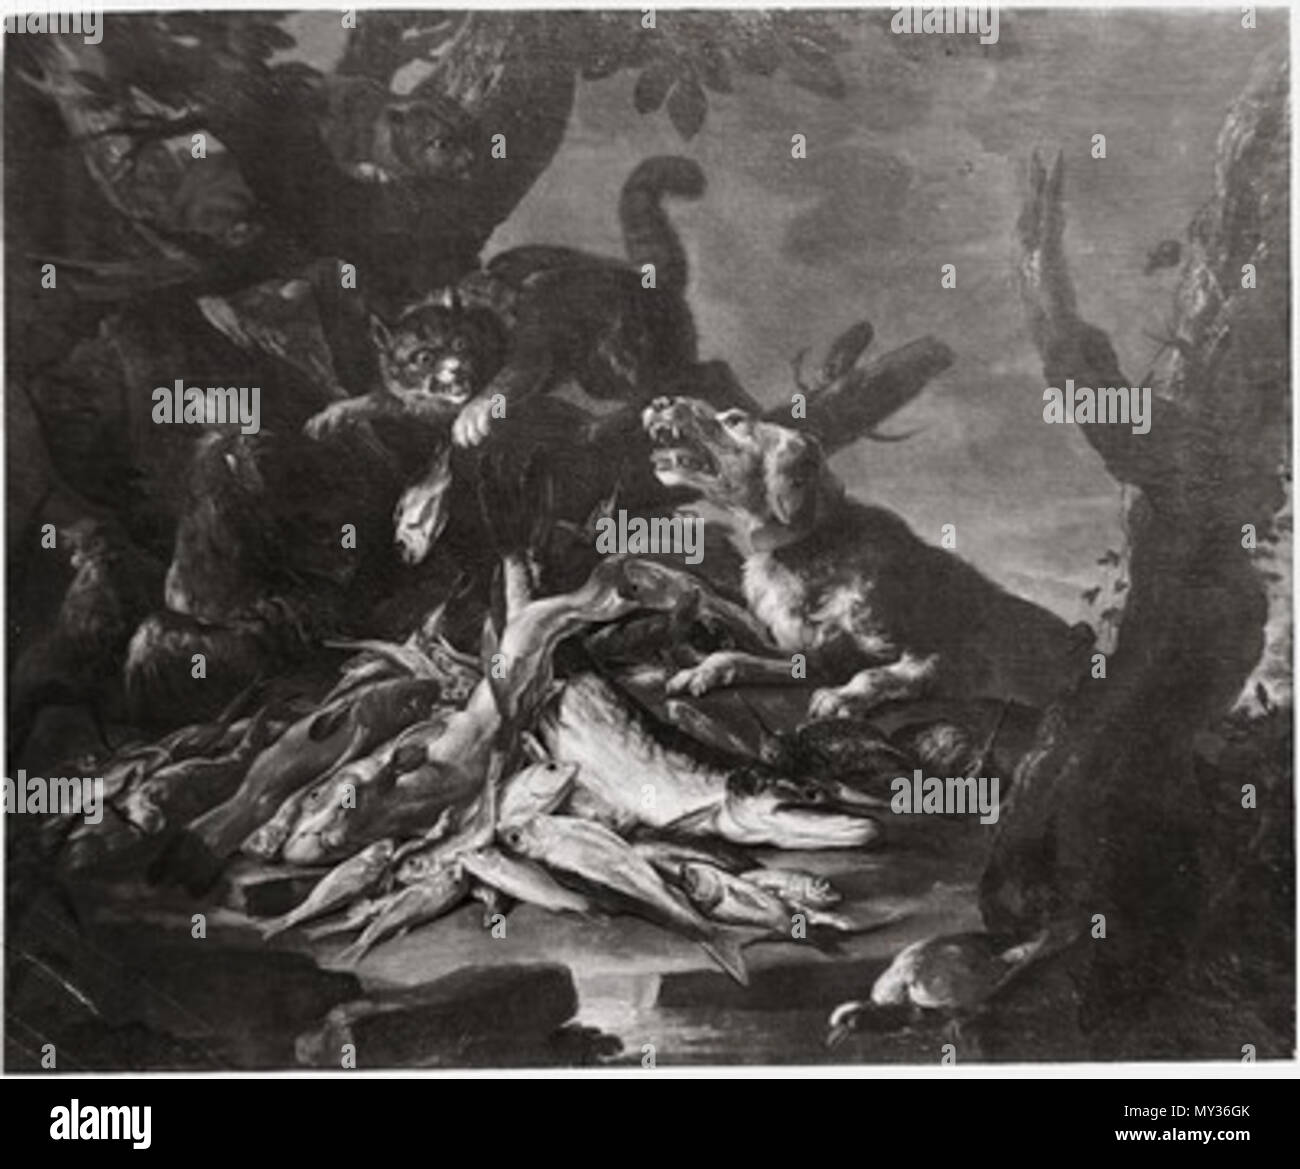 . Q15851270 . Tote Fische von einem Hunde bewacht, Öl auf Leinwand . wohl 17. Jh. (datiert mit 1620). signiert mit F. Snijders, aber wohl von einem anderen Maler 533 Tote Fische von einem Hunde bewacht Stock Photo